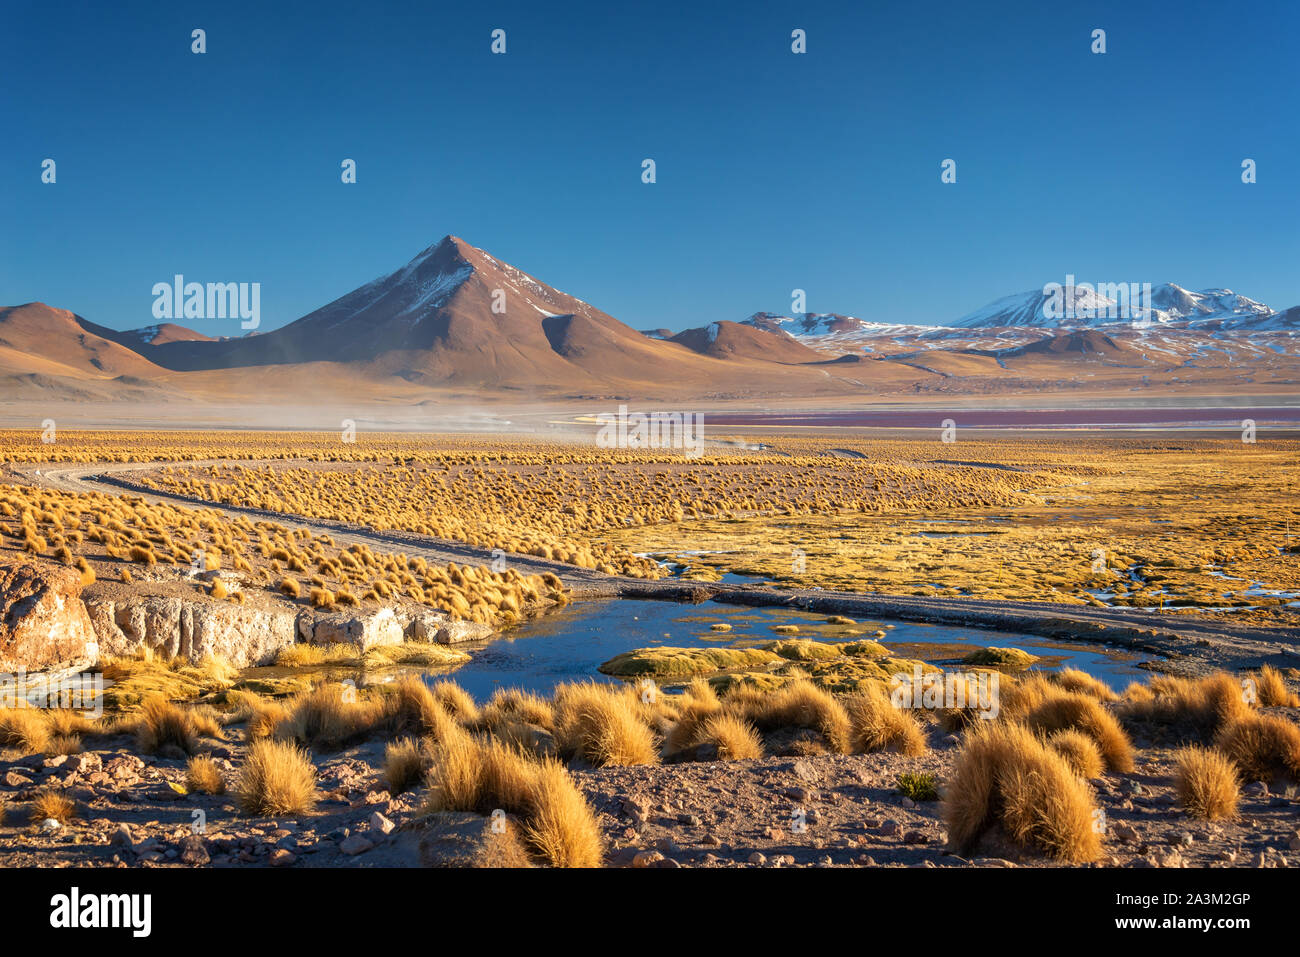 Landscape of the altiplano in Bolivia Stock Photo